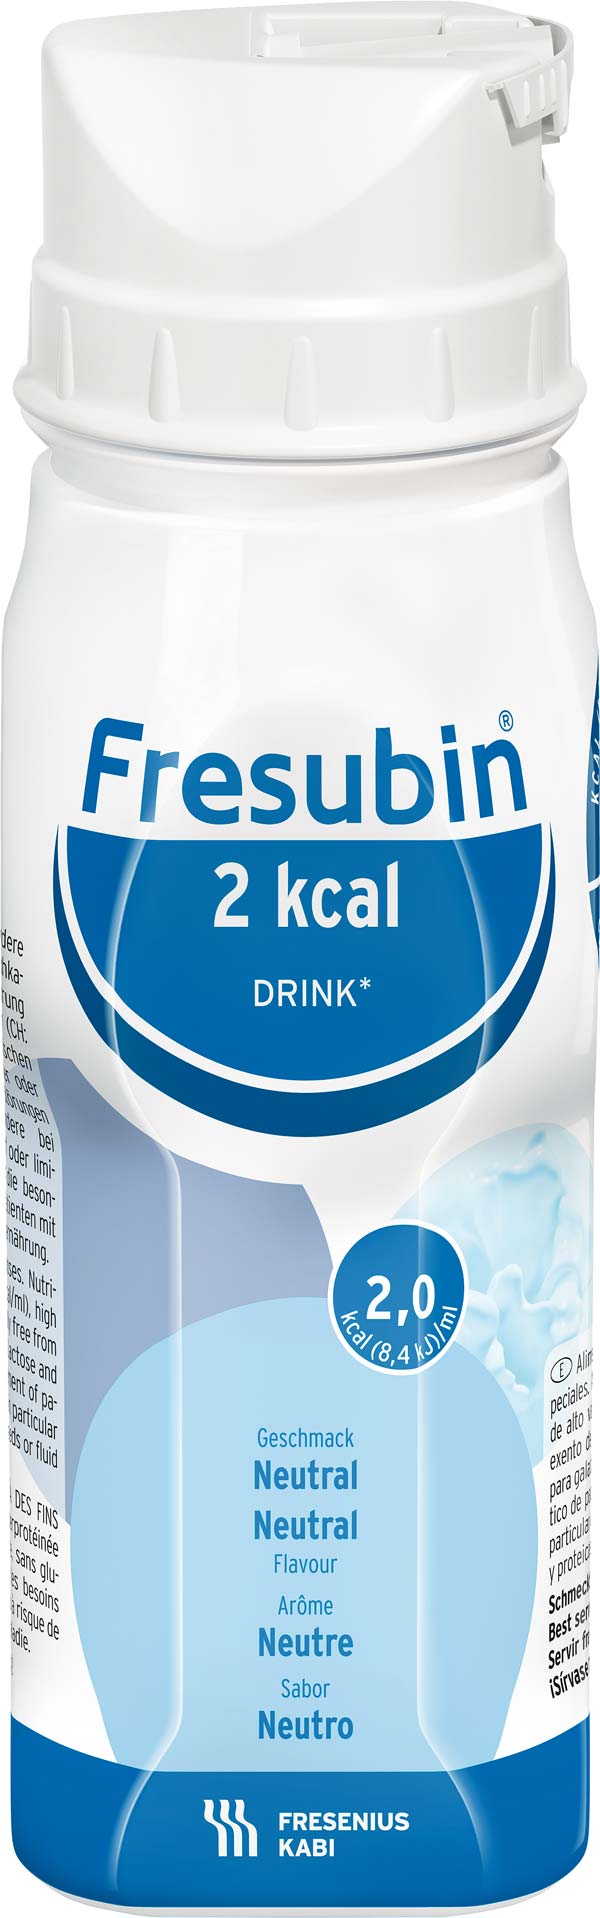 Fresubin 2kcal Drink Neutral (24x200ml) Trinknahrung - so schmeckt Lebensqualität